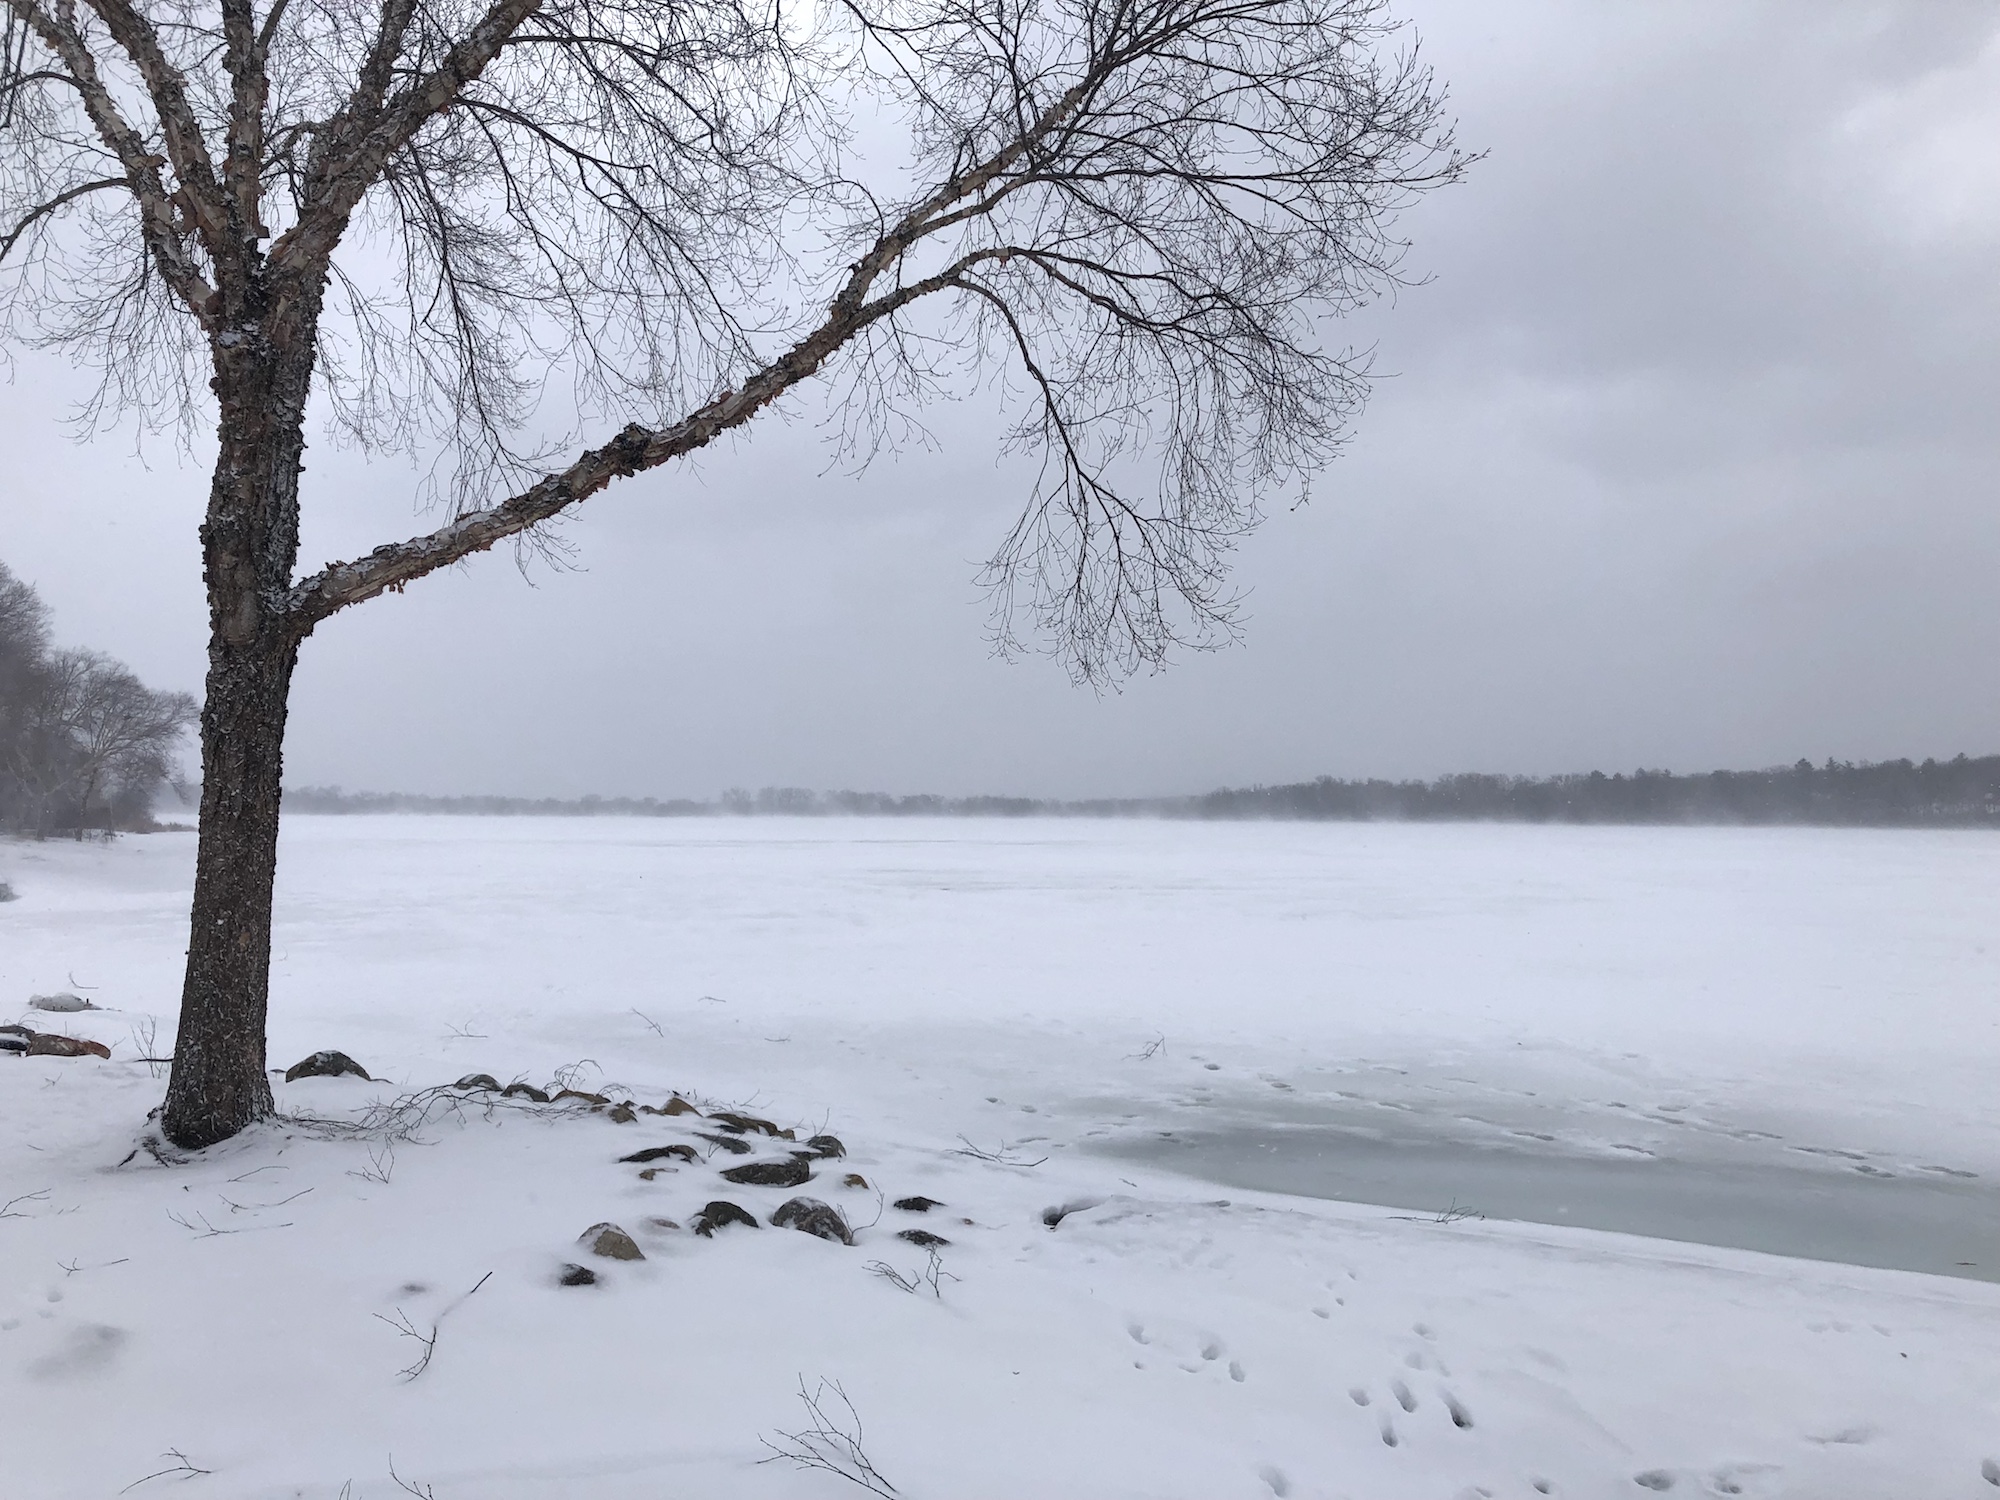 Lake Wingra on February 24, 2019.